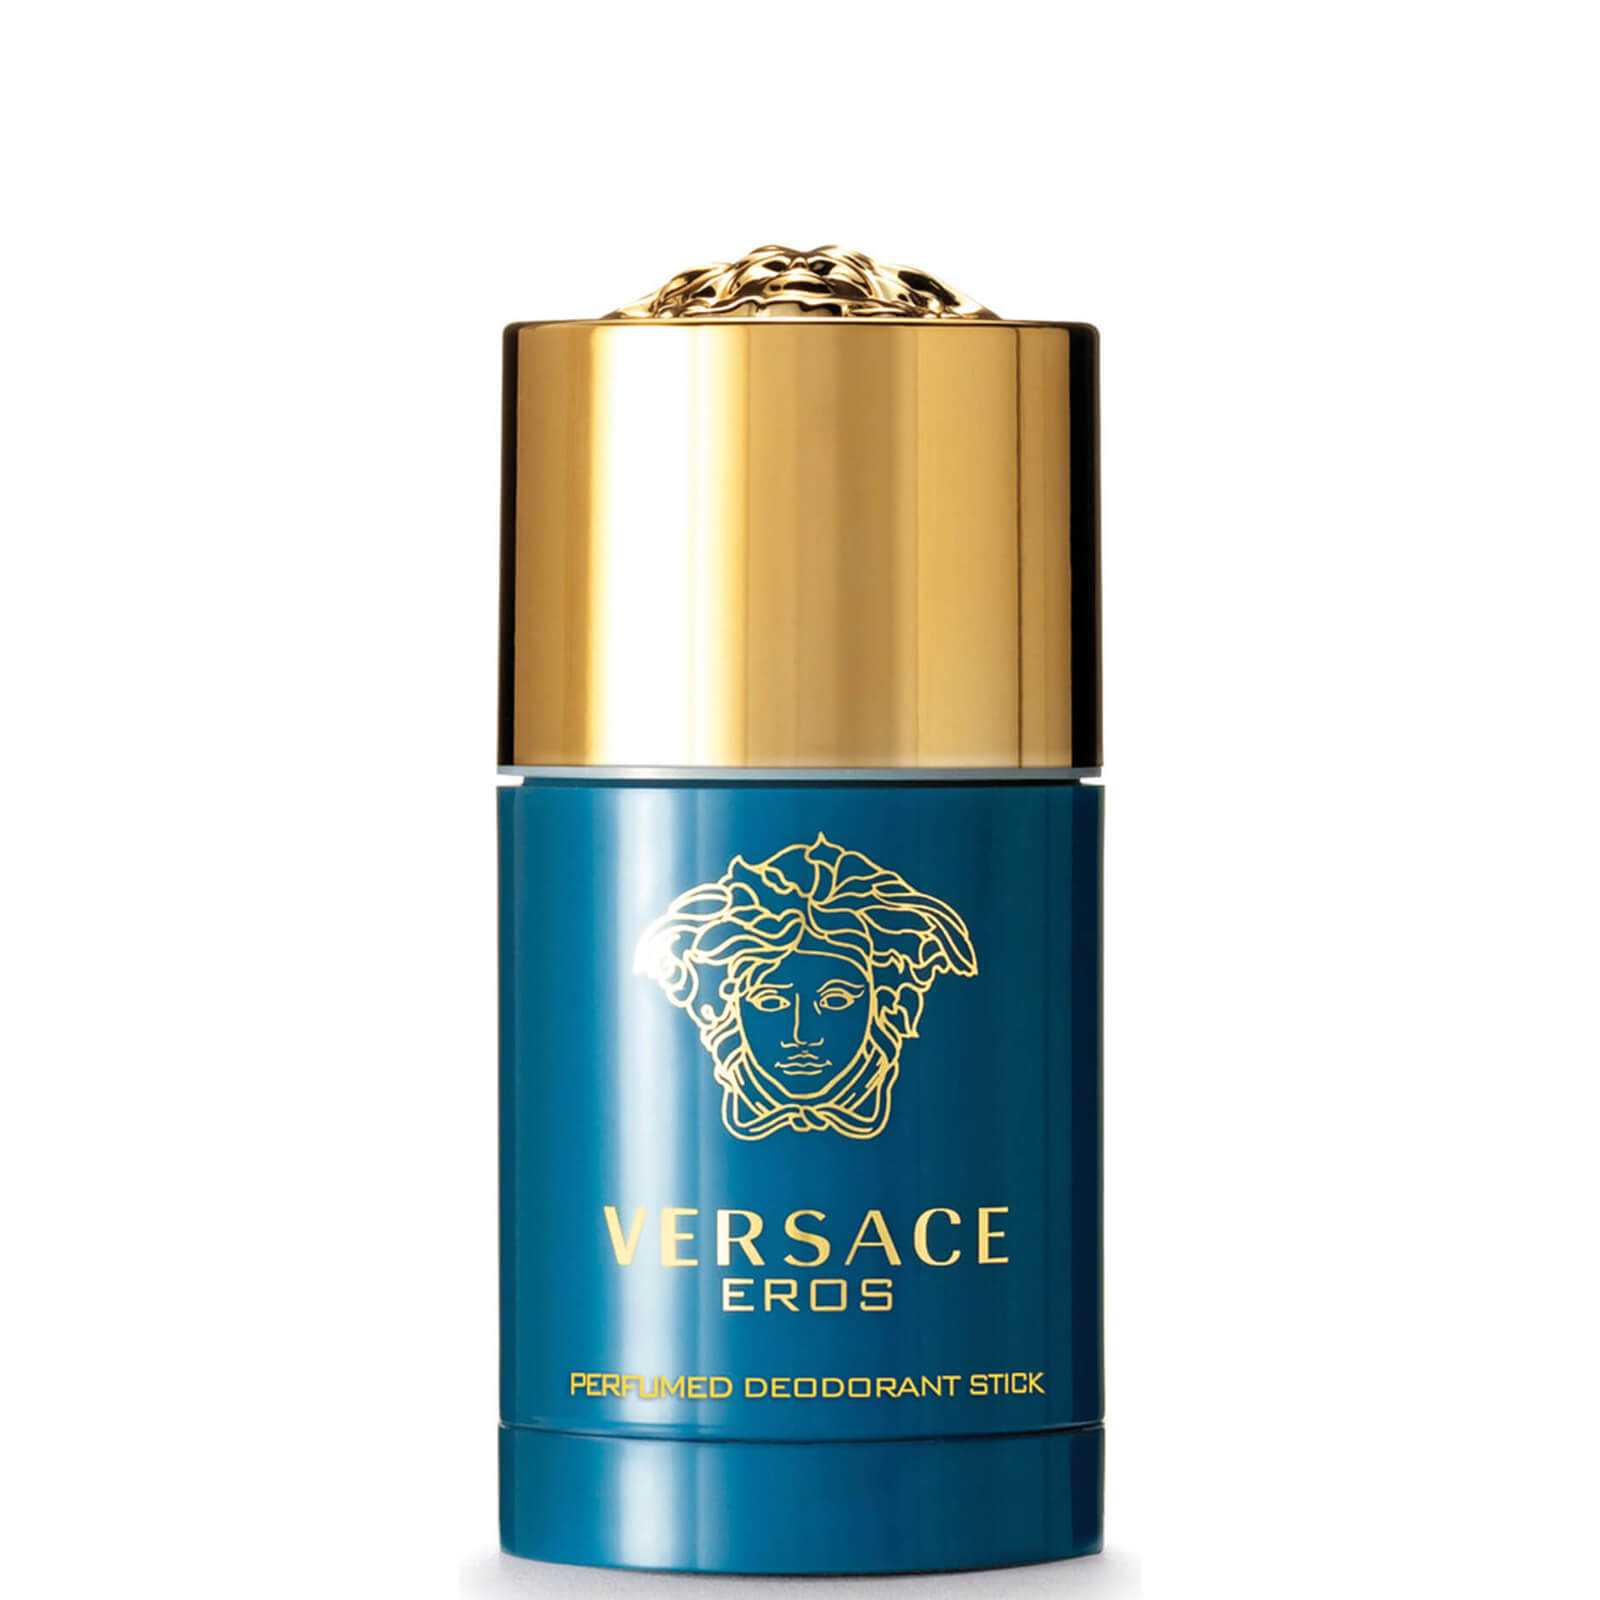 Image of Versace Eros deodorante in stick (75 ml)